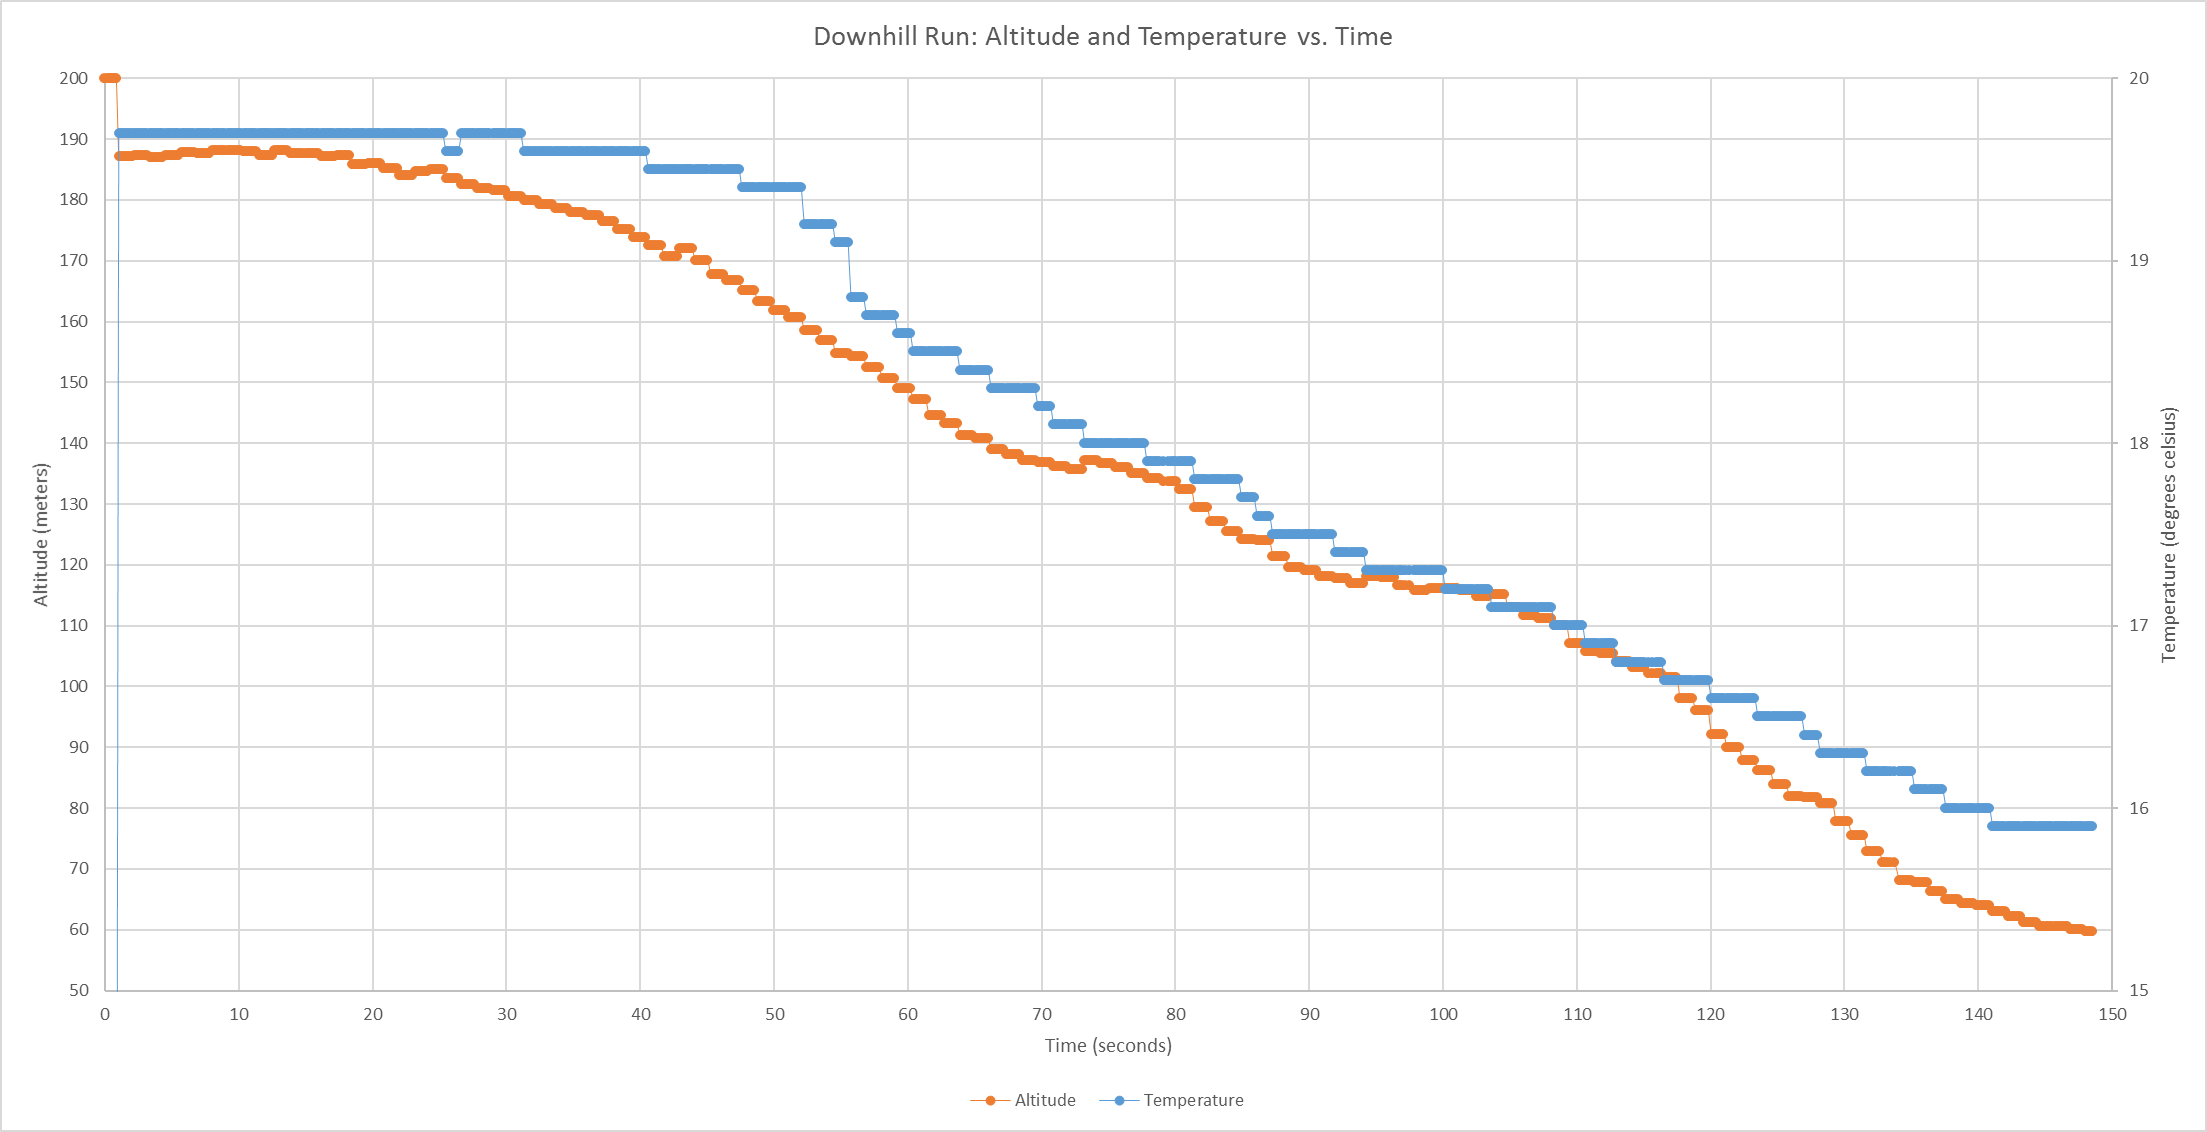 Downhill Altitude and Temperature Plot